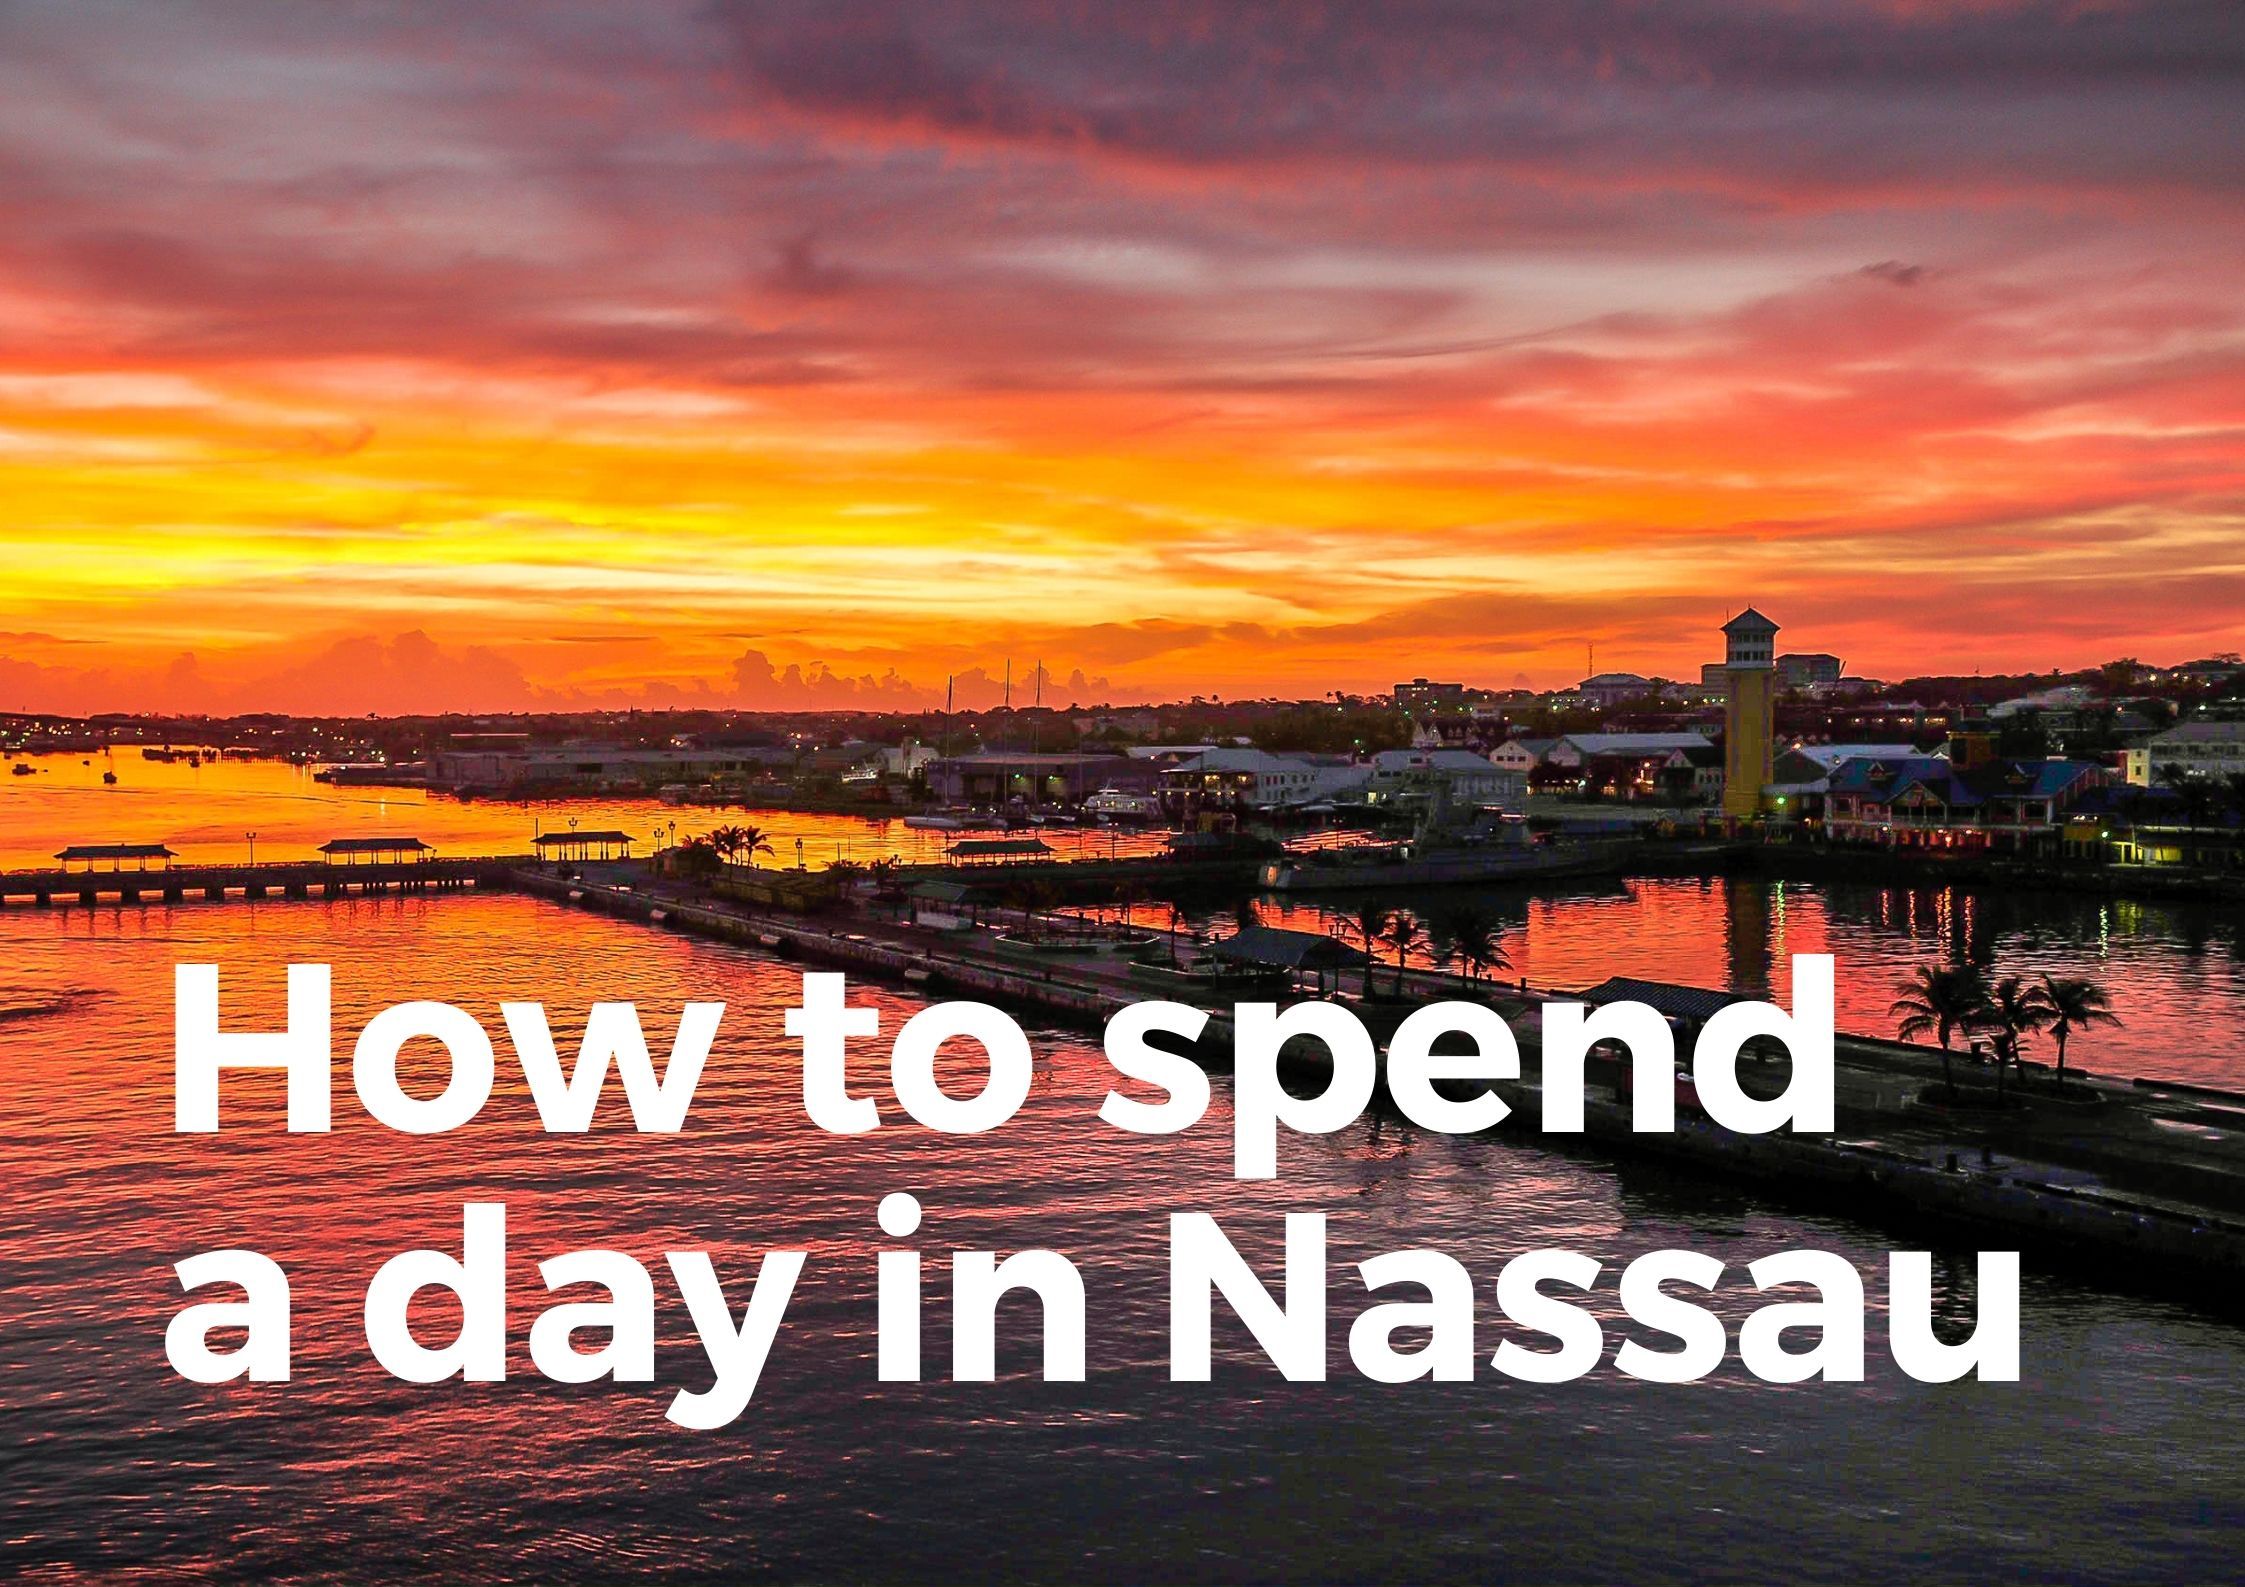 Spend a day in Nassau